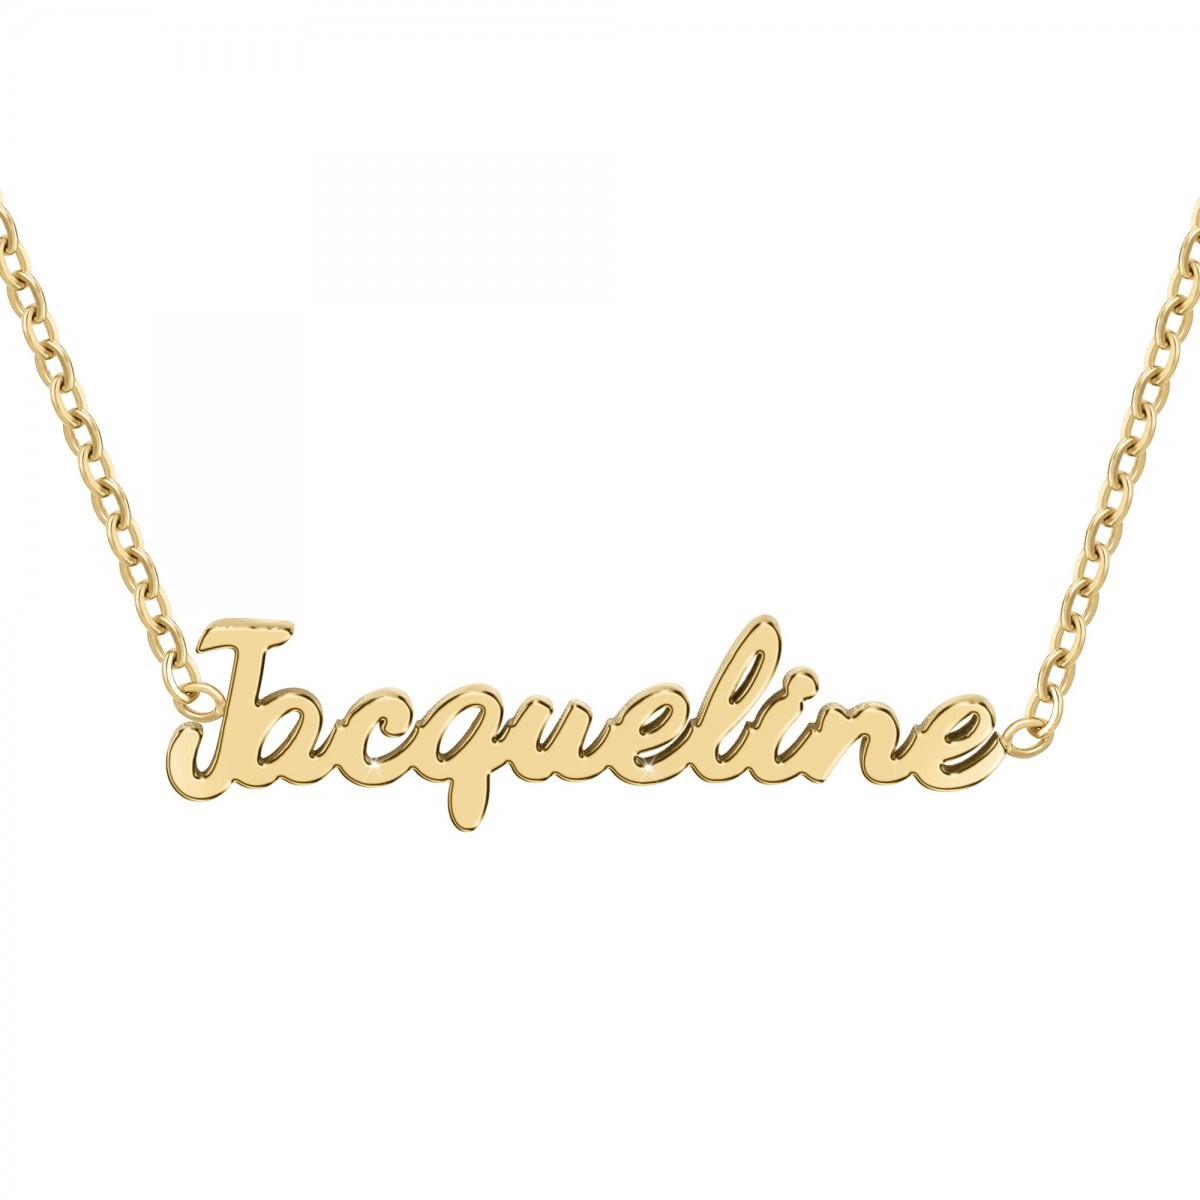 Jacqueline - Collier prénom